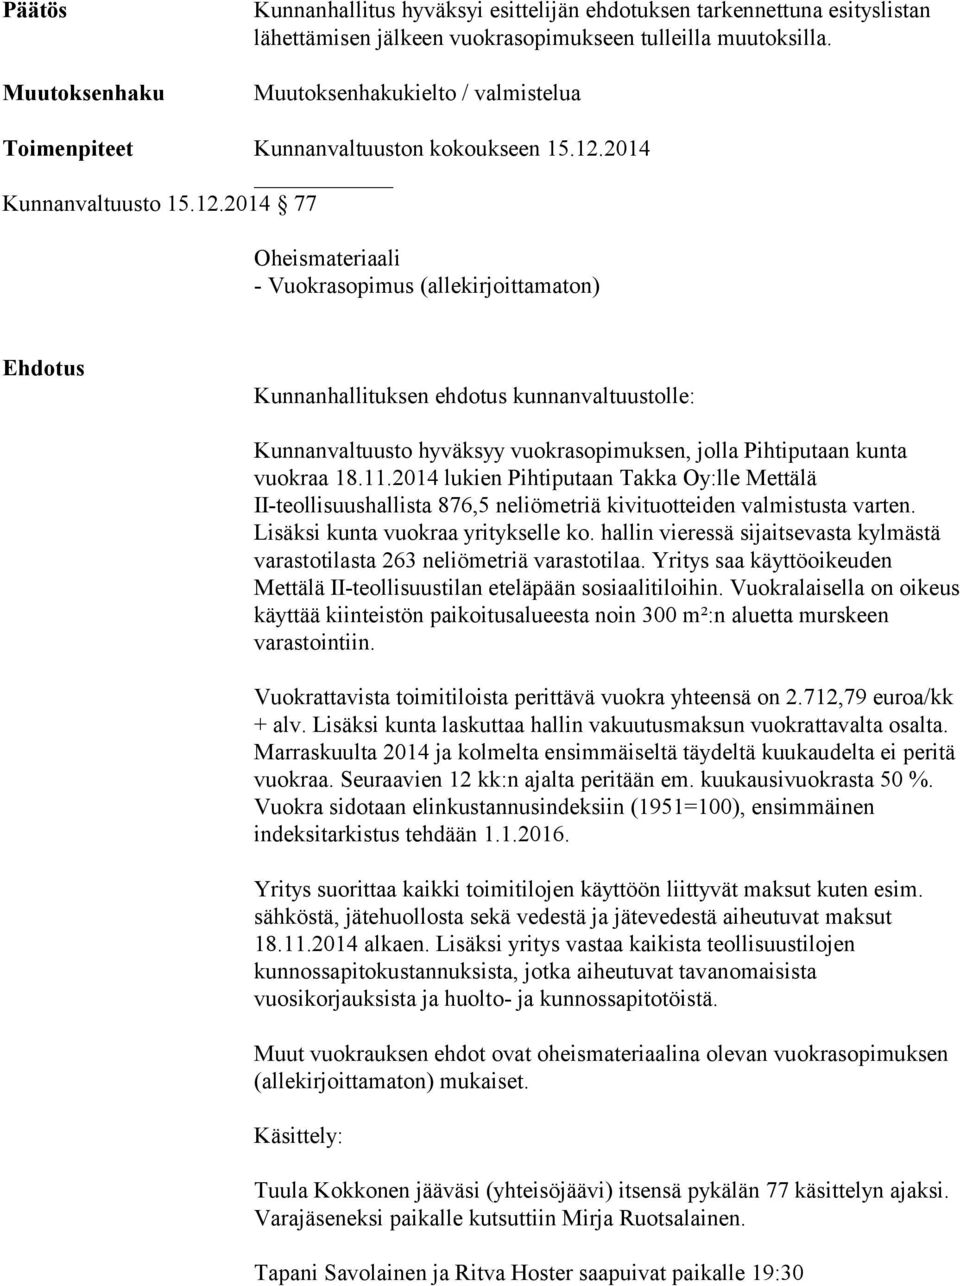 2014 Kunnanvaltuusto 15.12.2014 77 Oheismateriaali - Vuokrasopimus (allekirjoittamaton) Kunnanvaltuusto hyväksyy vuokrasopimuksen, jolla Pihtiputaan kunta vuokraa 18.11.